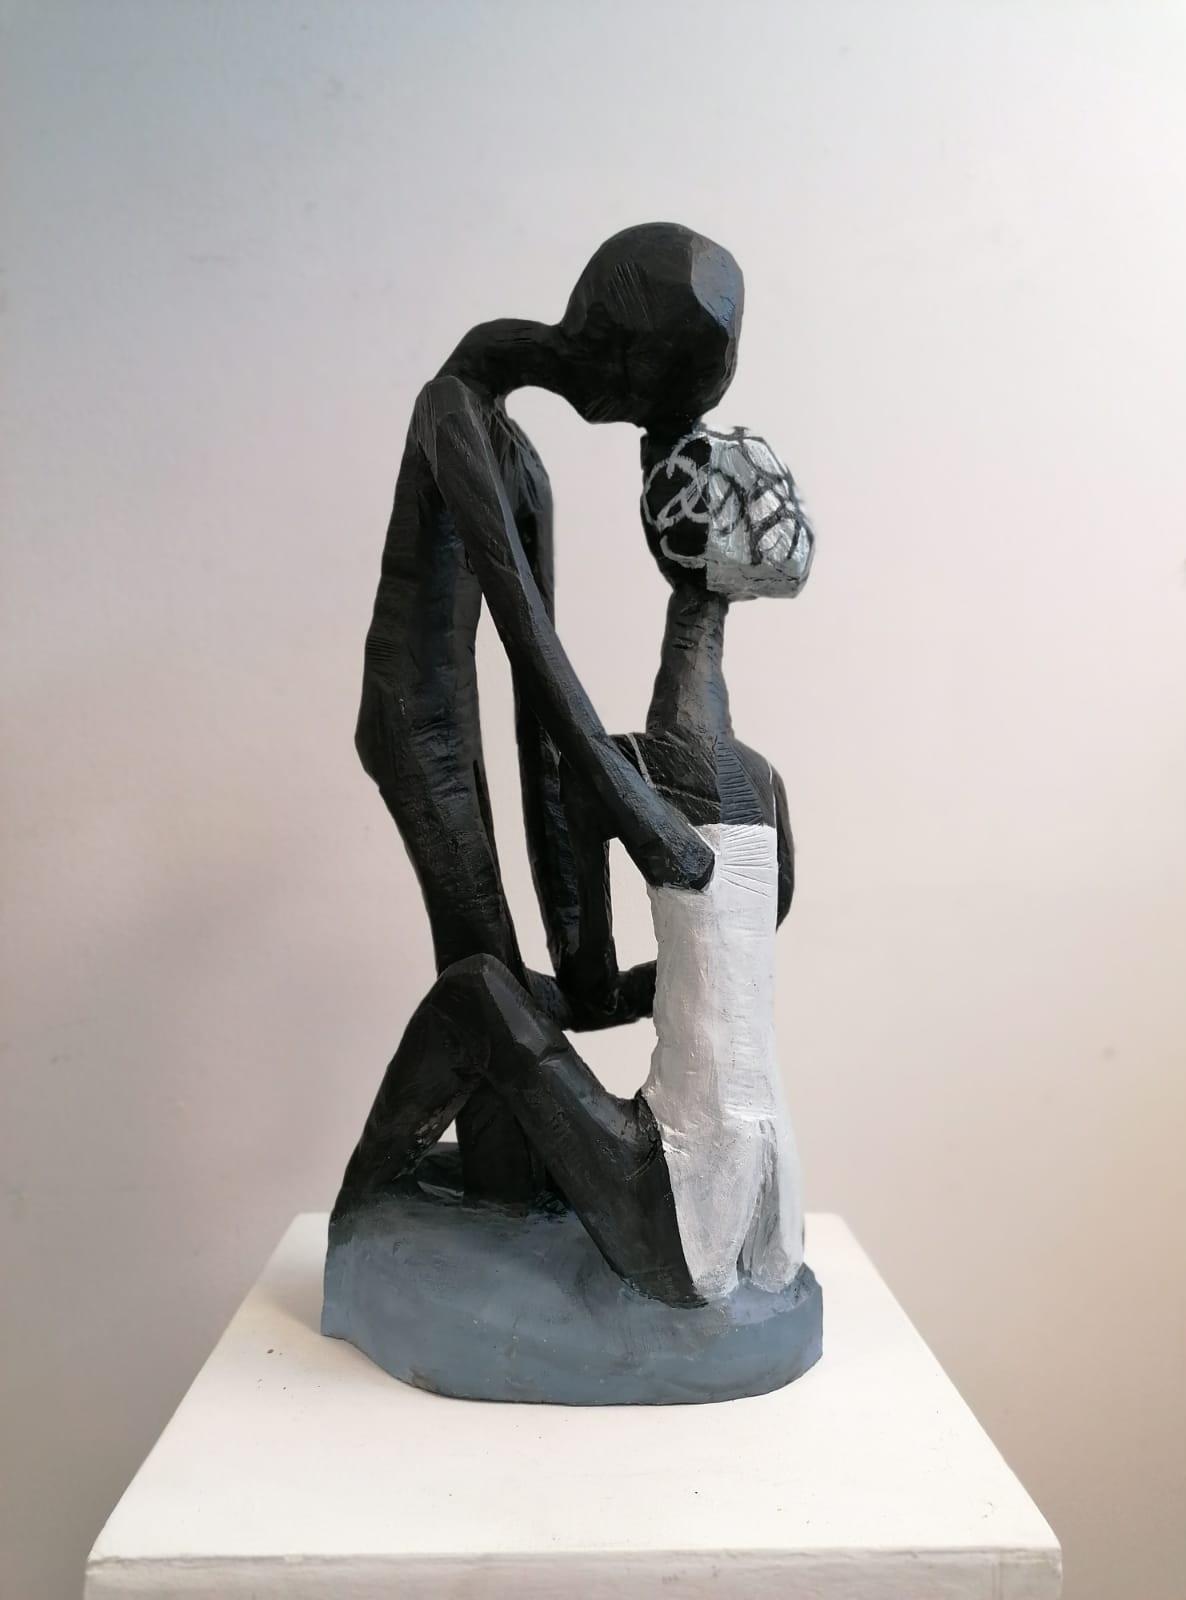 Terence Carr, Der Kuss, 2019, Aluminium, Auflage 7 + 1 e.a., 75 cm x 30 cm x 33 cm, Preis auf Anfrage, SüdWestGalerie